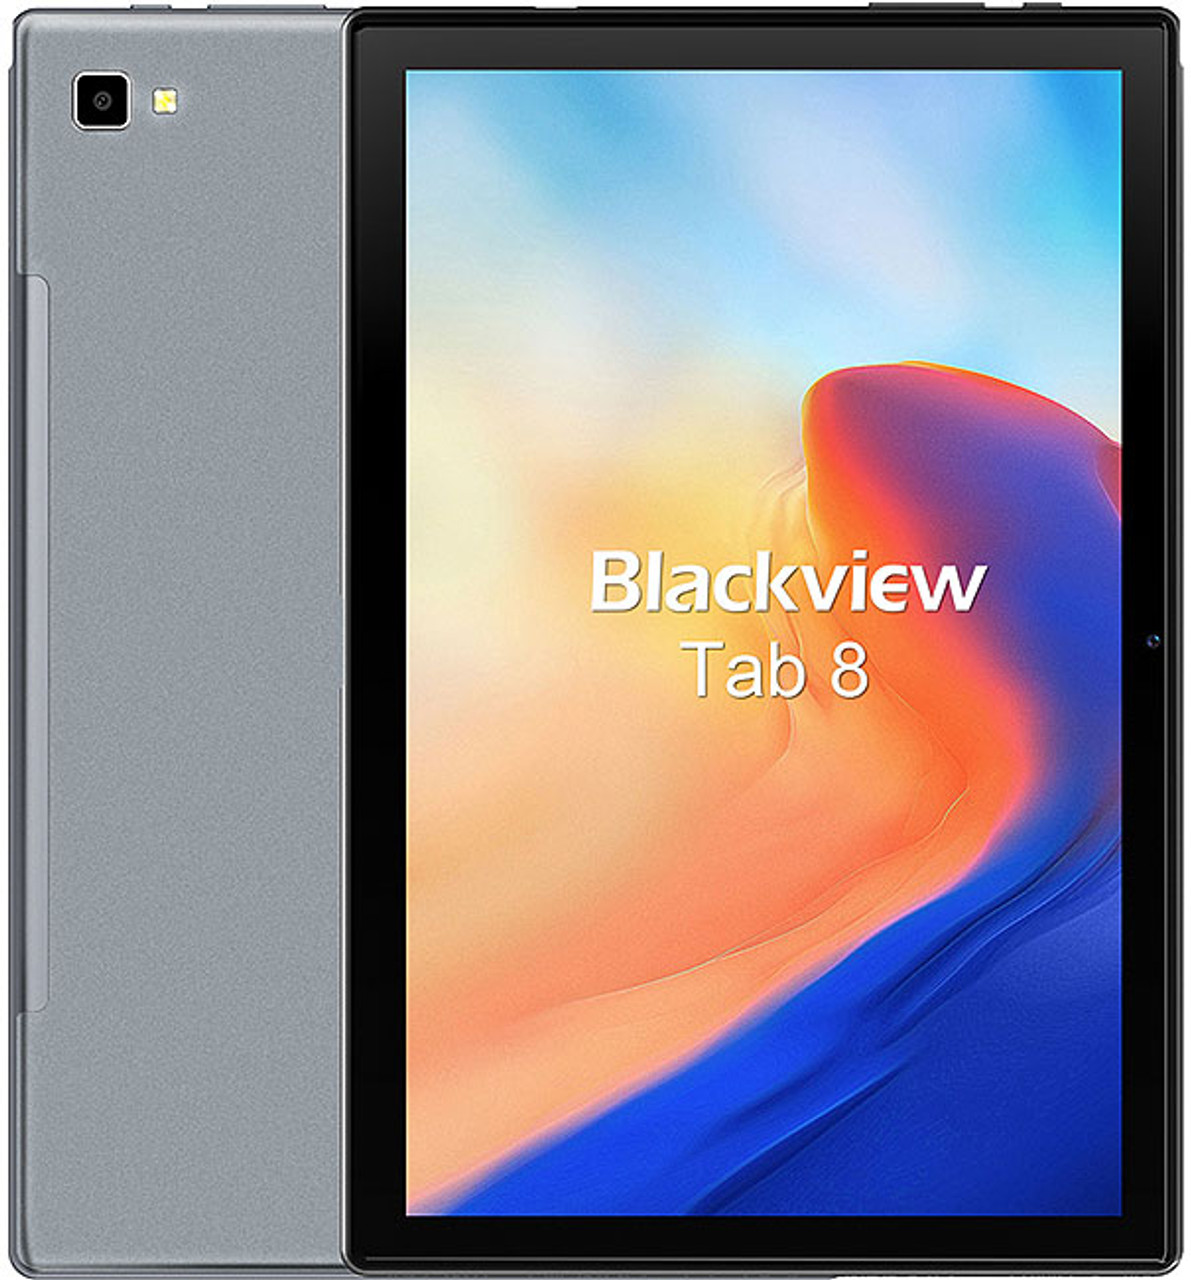 Blackview Tab 8,  128GB+4GB, 5MP, 10.1" WIFI Tablet   Blue - *Pre-Order